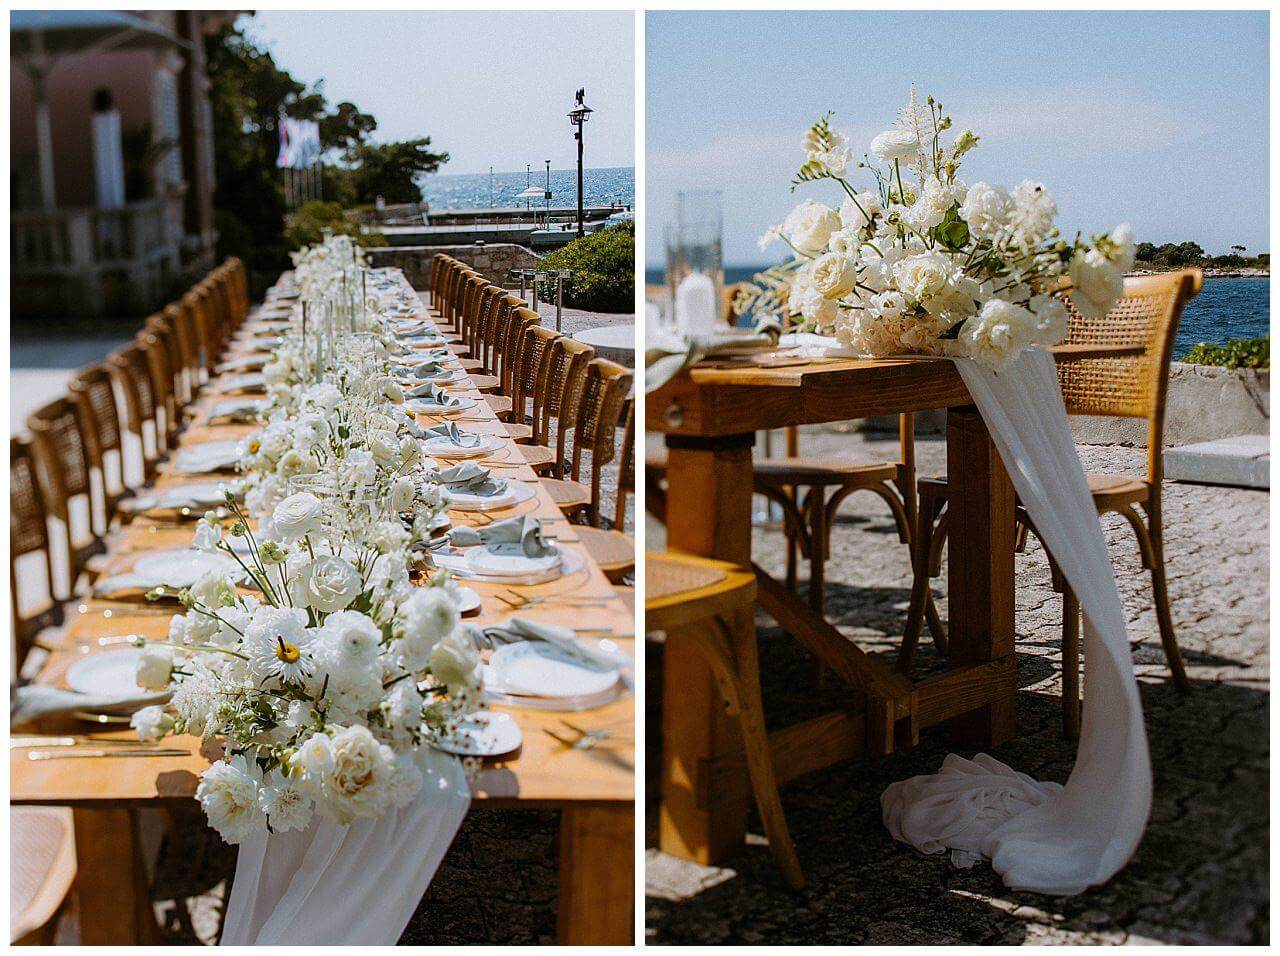 Tischdekoration in weiß grau mit weißen Blumen und weißer Tischdecke bei einer Hochzeit in Istrien Kroatien